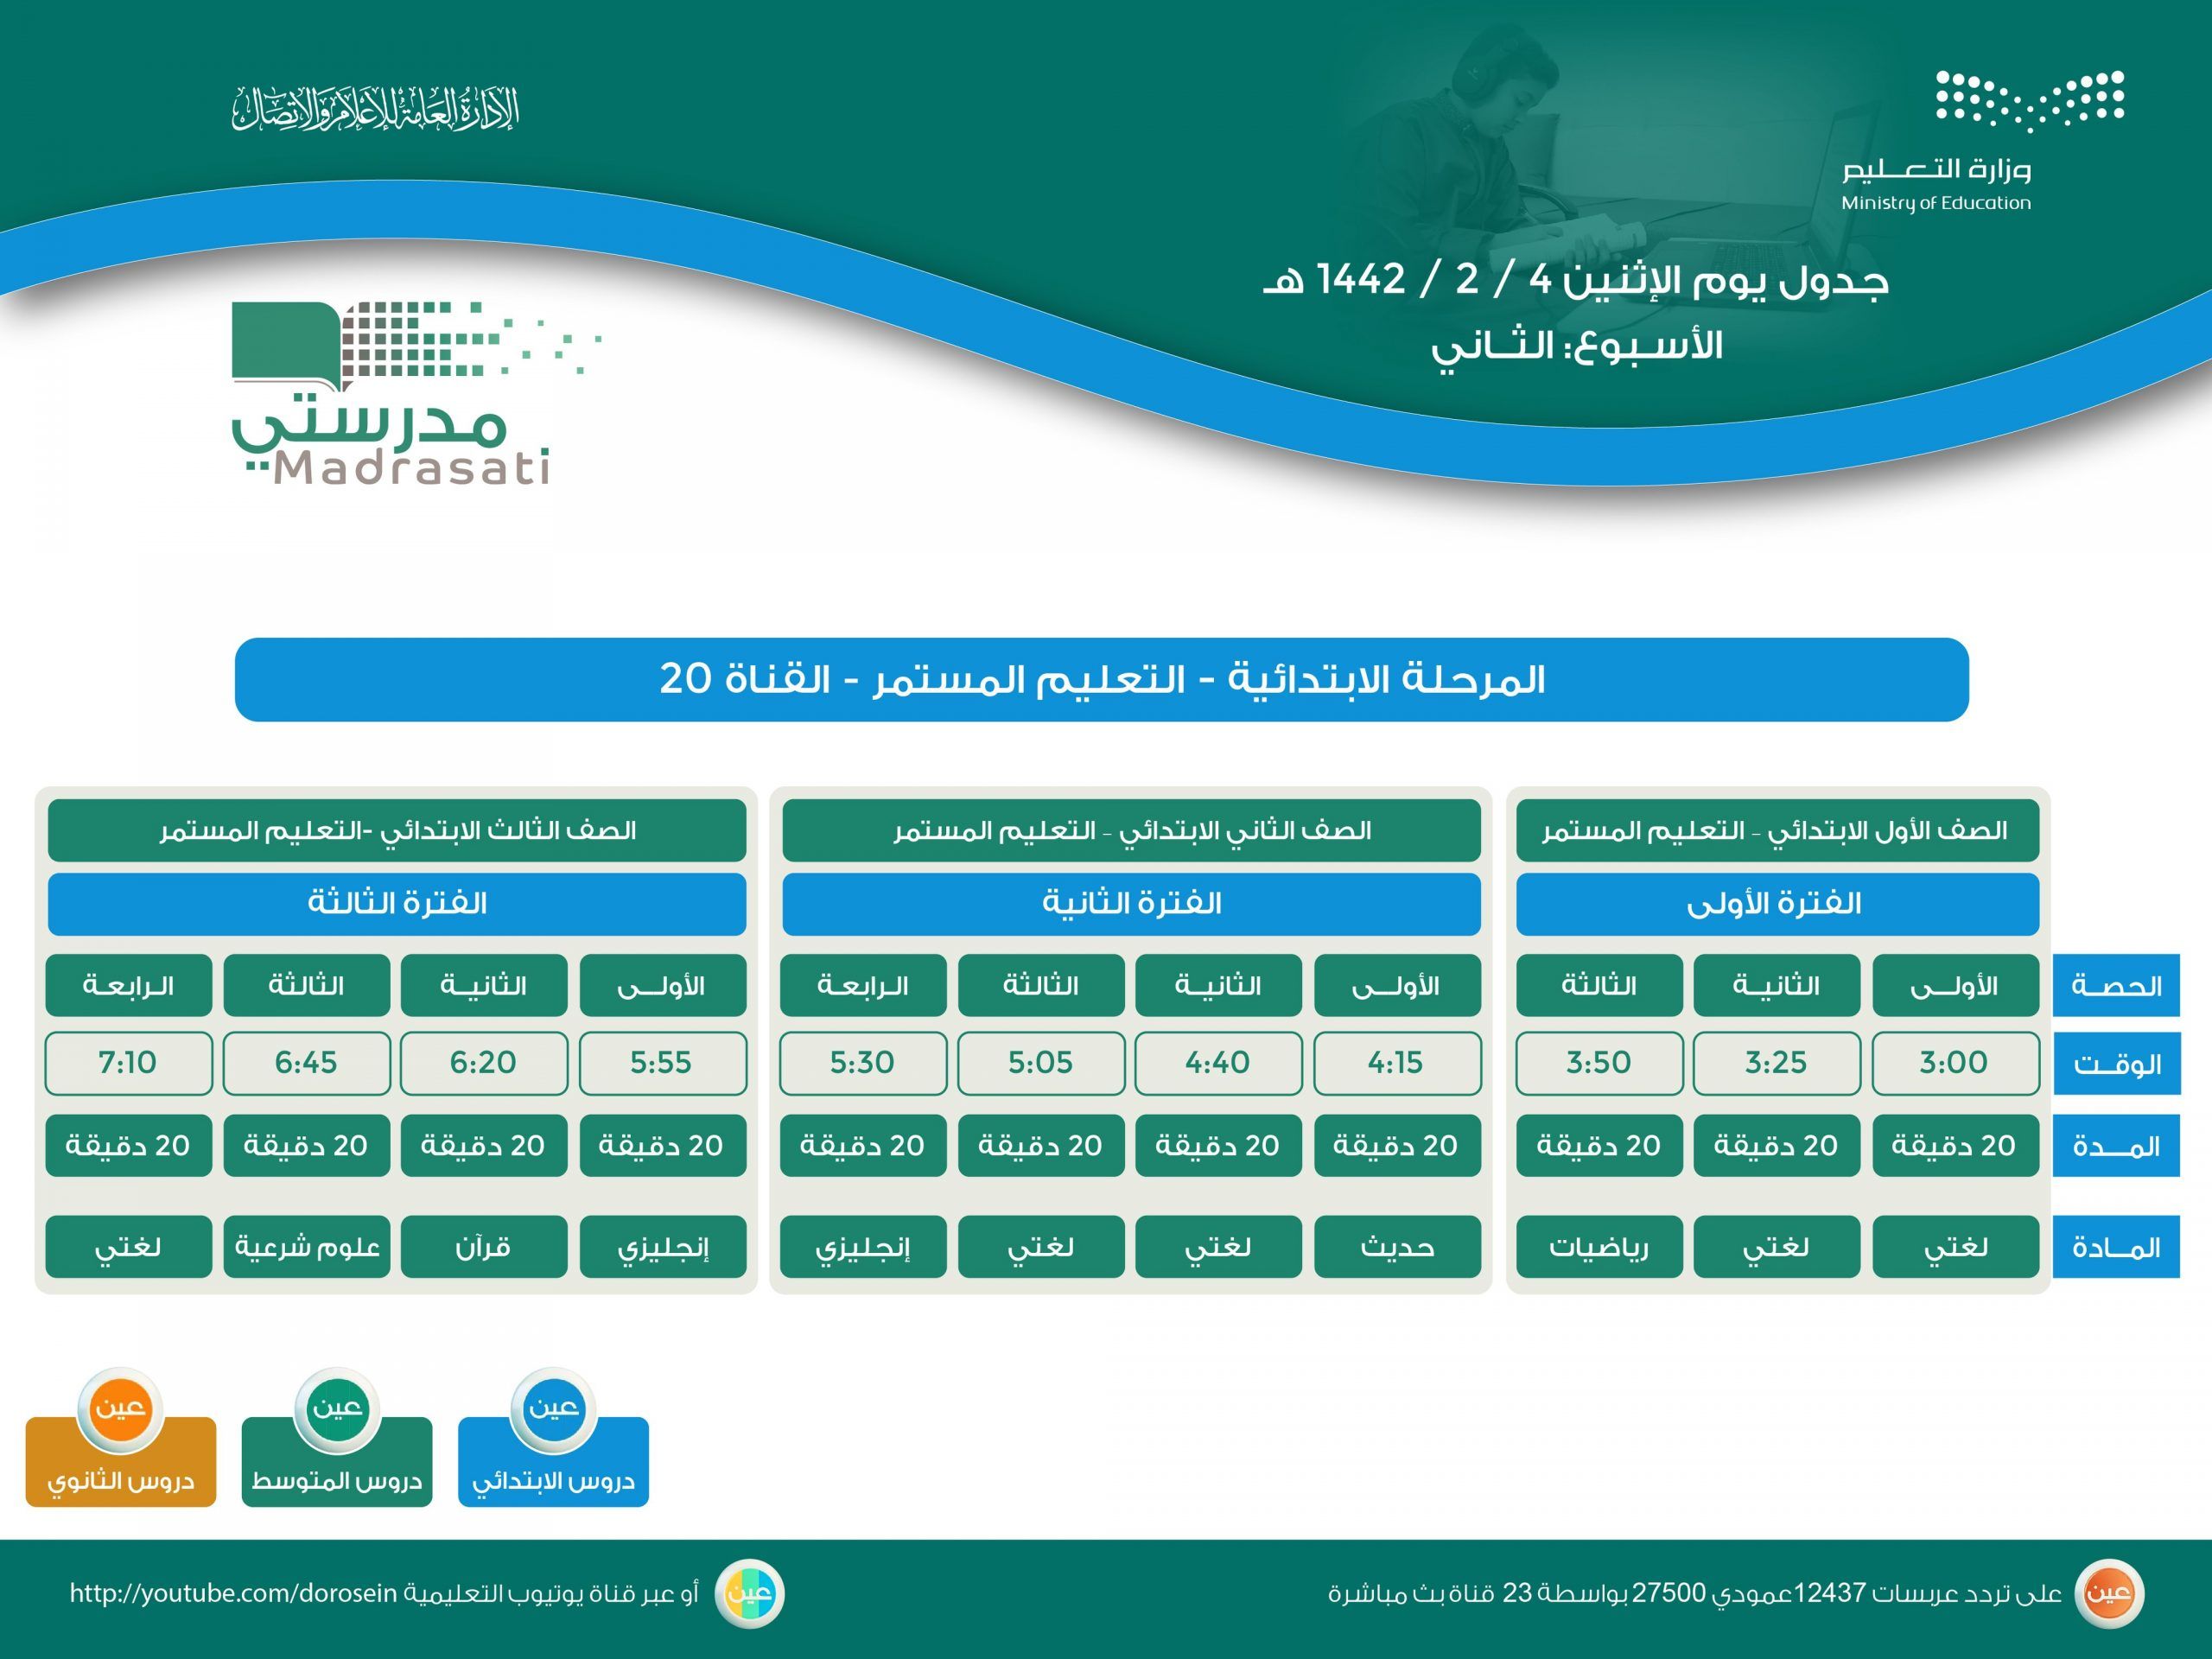 وزارة التربية والتعليم السعودية توضج جدول الحصص اليومي